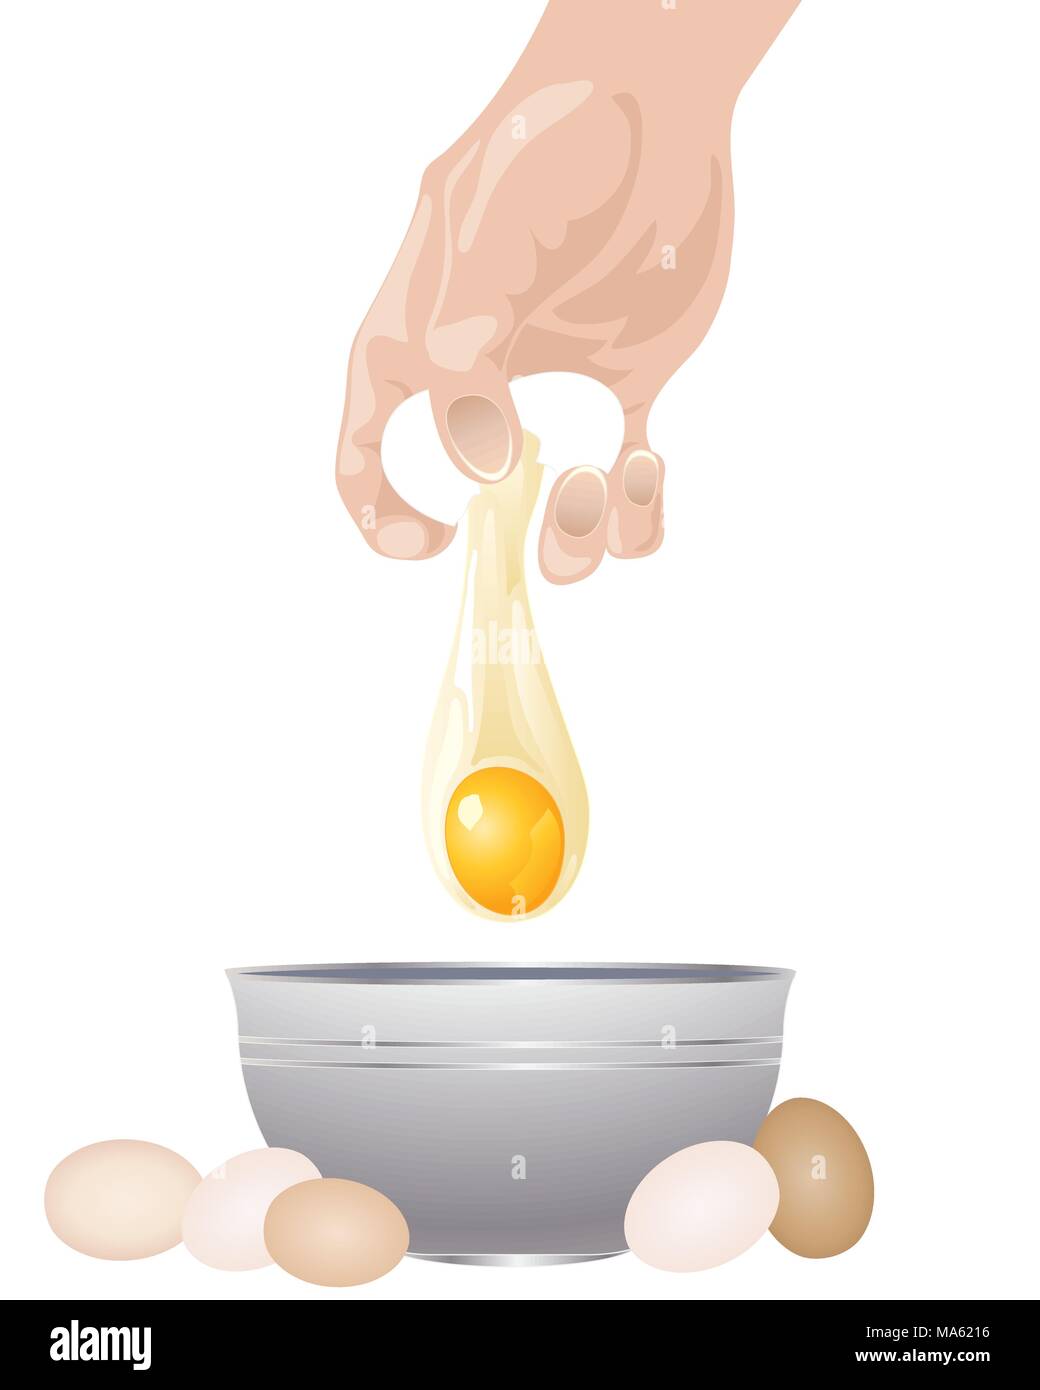 Ein Vektor Abbildung im EPS 10 Format einer Hand brechen ein Ei in einer Schüssel auf einem weißen Hintergrund isoliert Stock Vektor